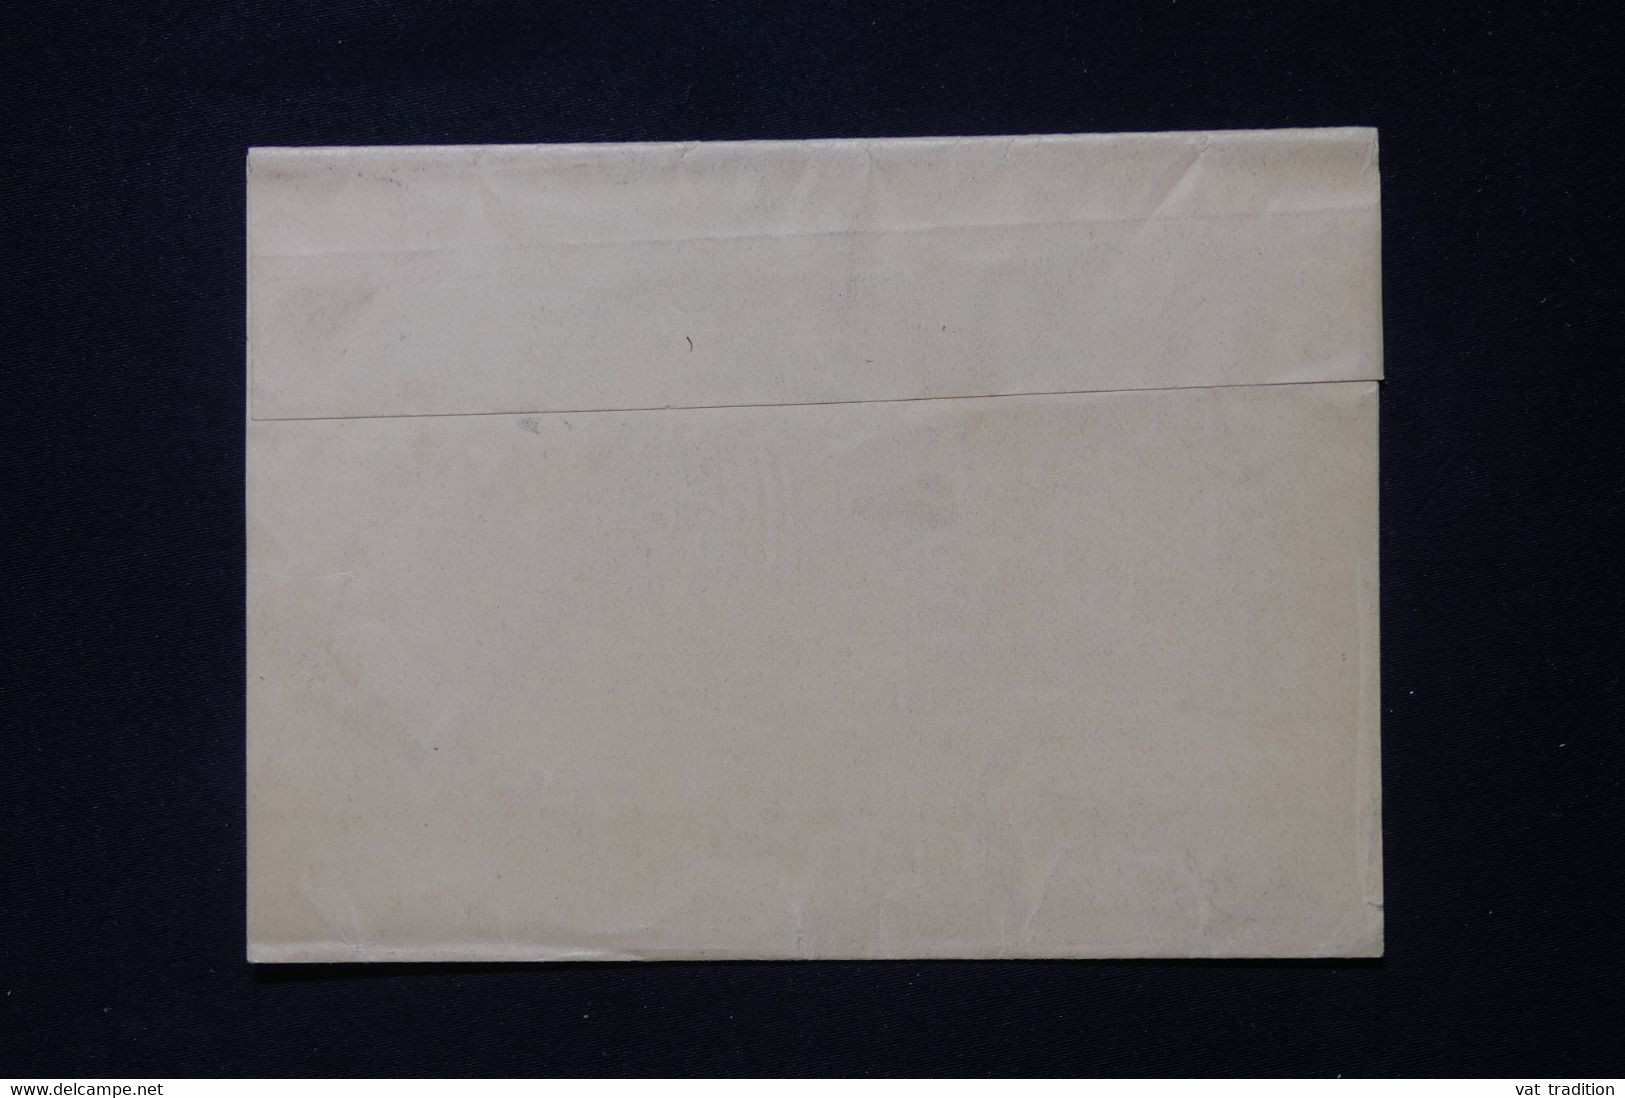 NOUVELLE ZÉLANDE - Entier Postal ( Pour Imprimés ) Pour La France  - L 88328 - Enteros Postales